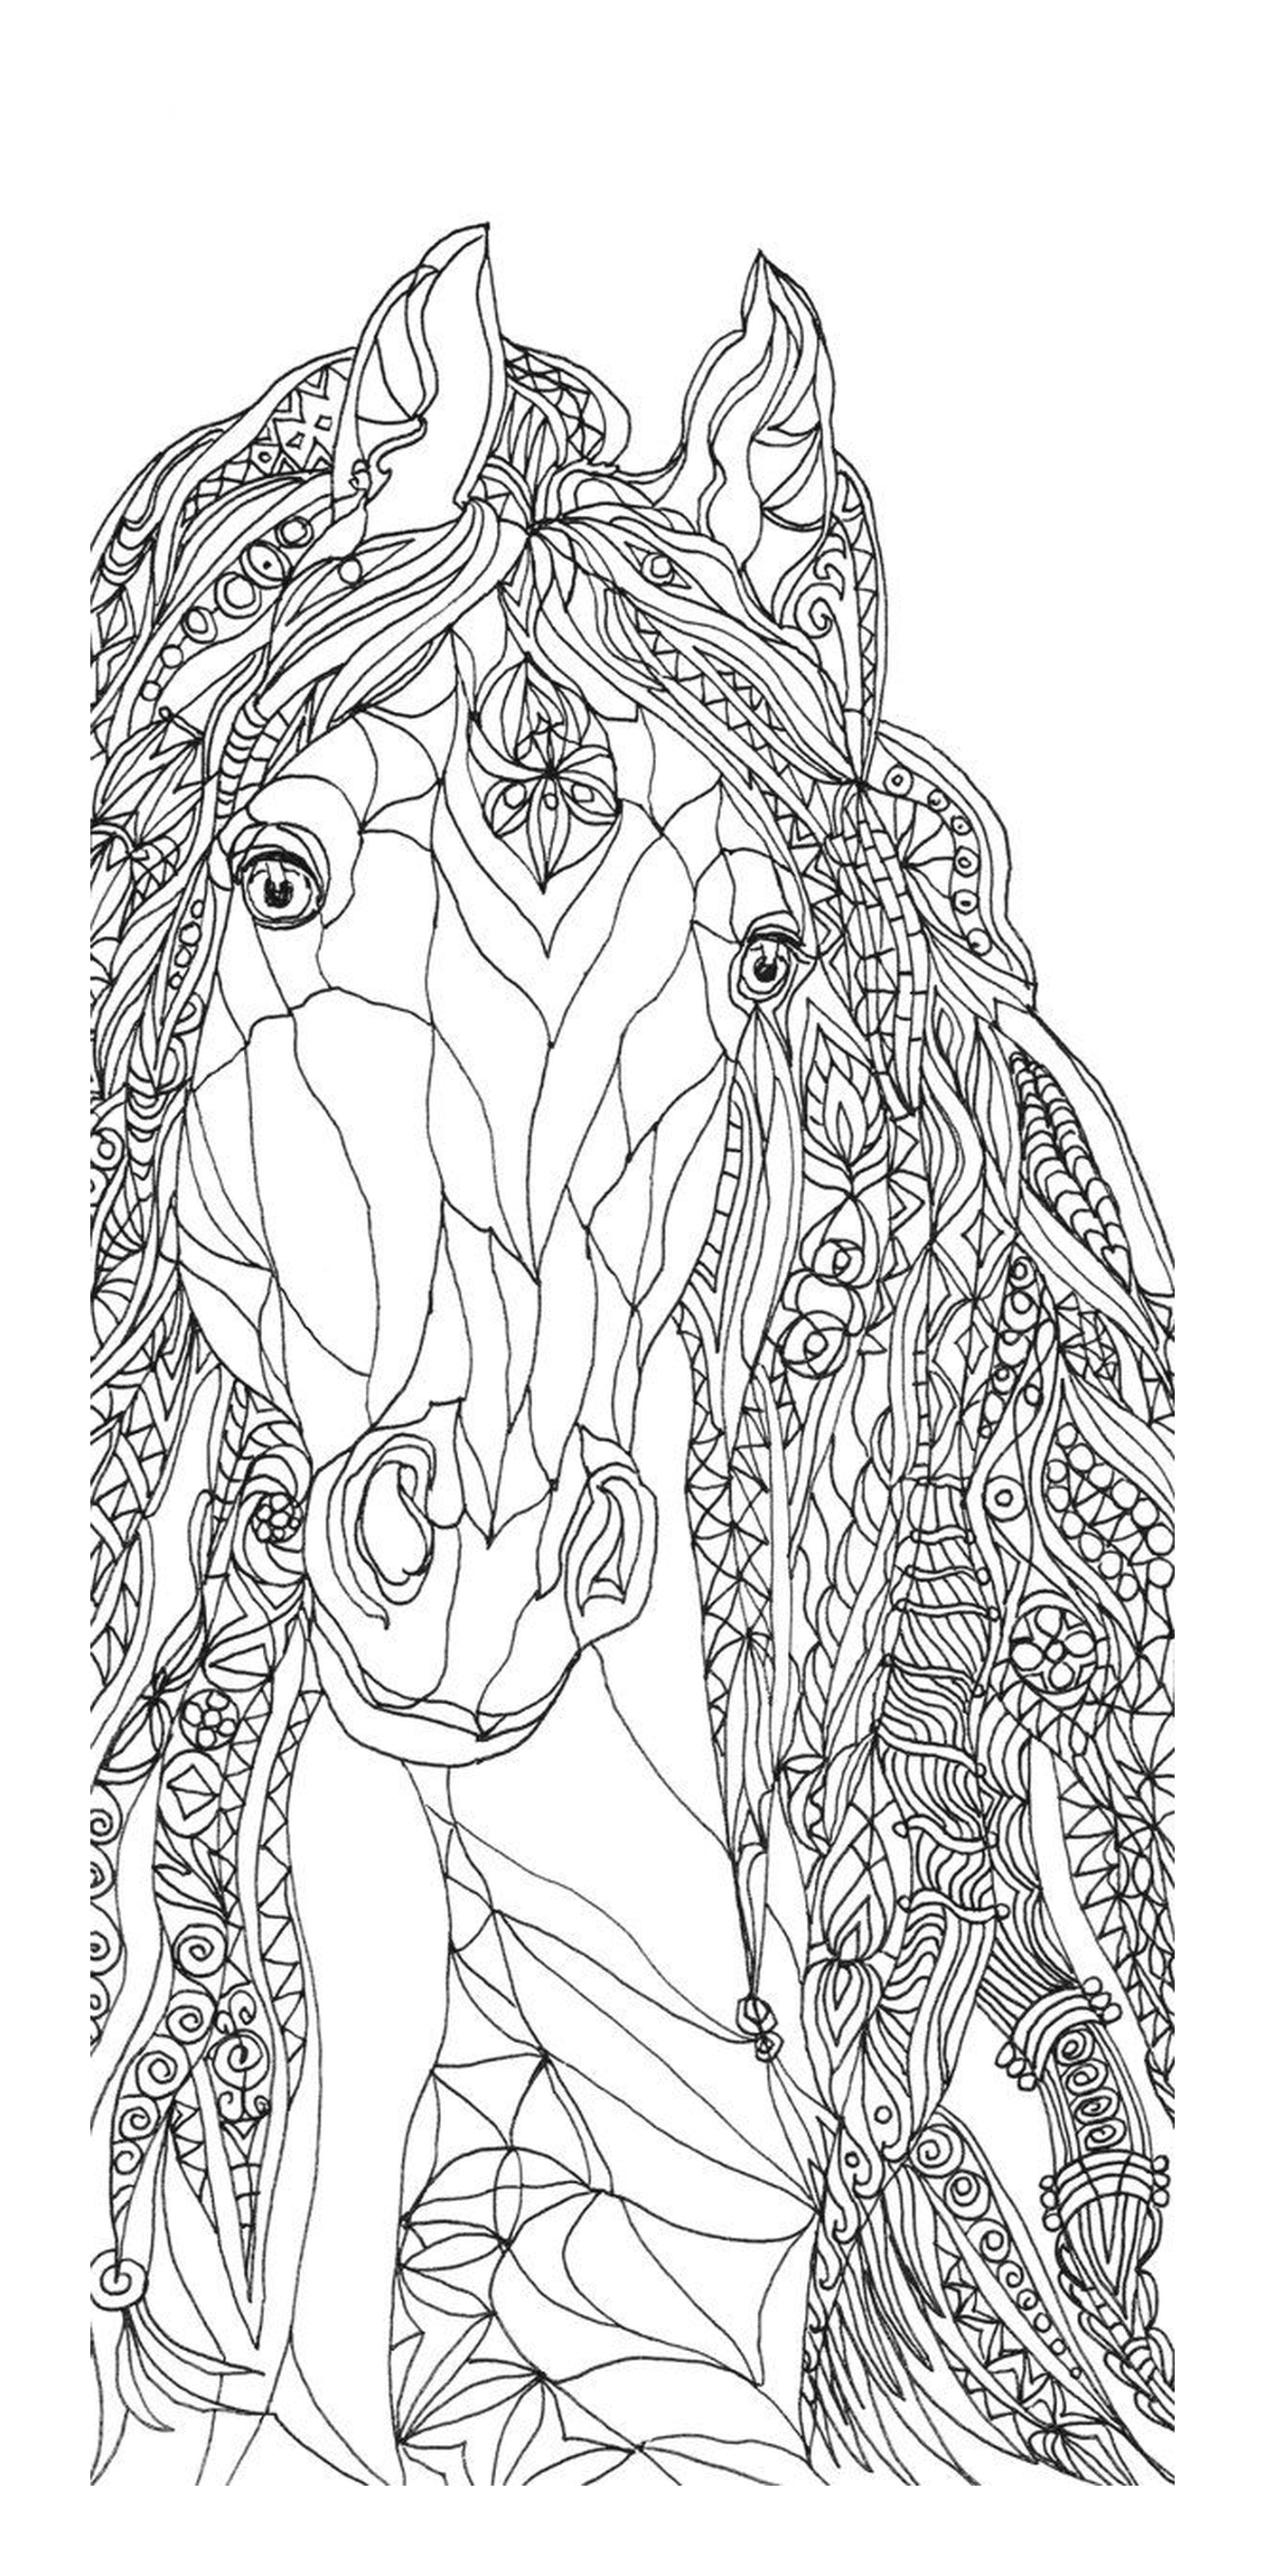  La testa di un cavallo in stile zentangle 